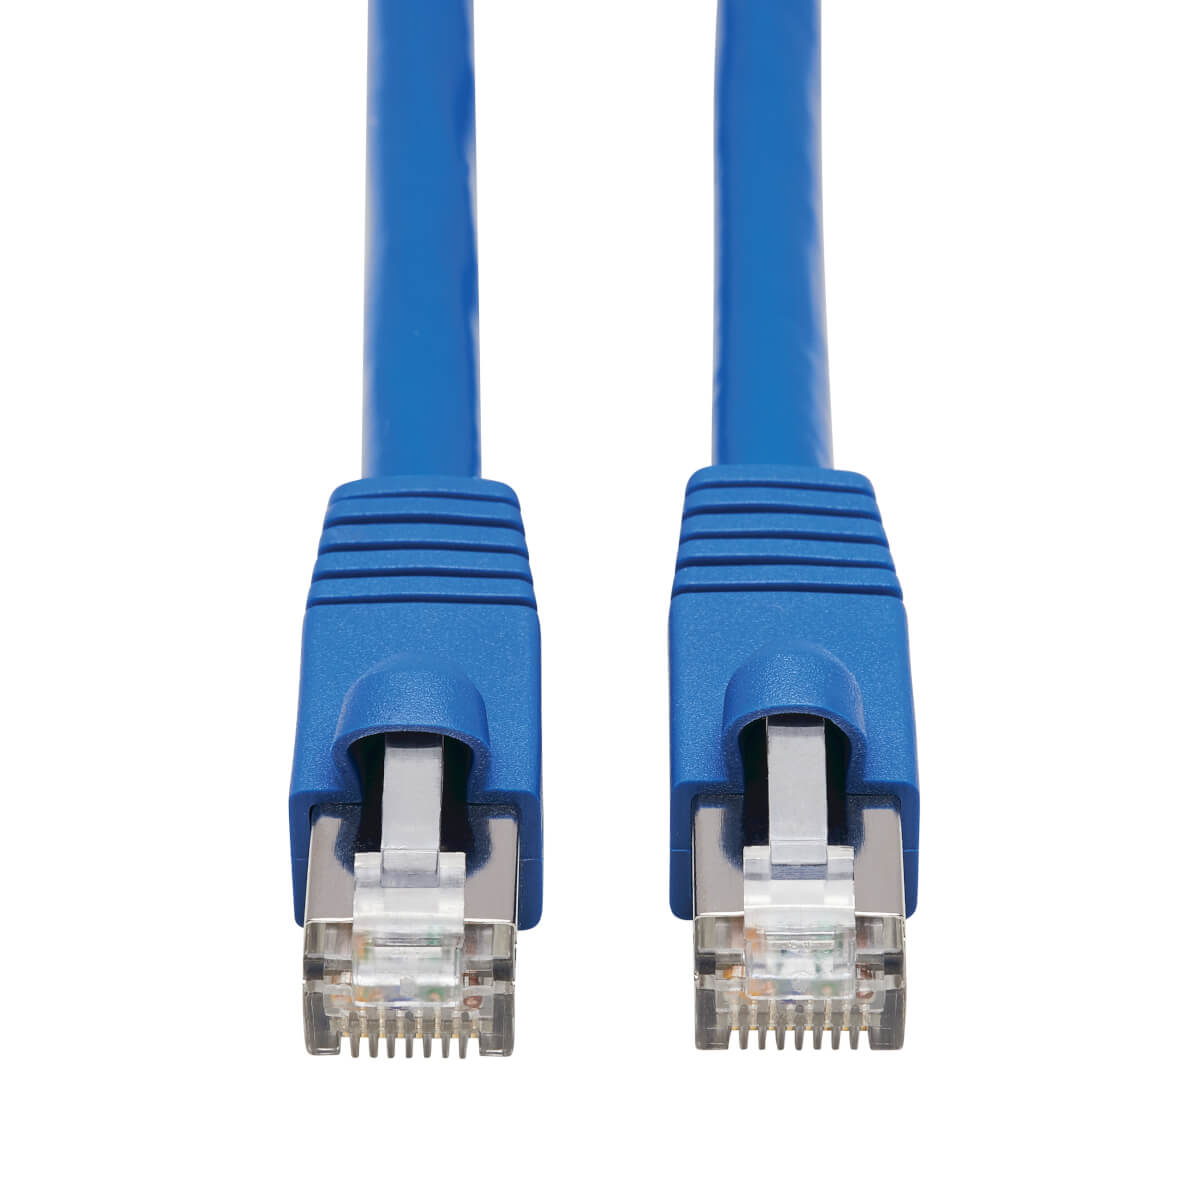 Cat.6 f/UTP 23 AWG rj45 Plug - with Boots. RJ-45 (M). Cable UIM-dom, cat5 Patch Cable, 1 m Blue (dal) (p1bl Patch Cord cat5 1m Blue dal Bus). Промышленный Ethernet кабель.